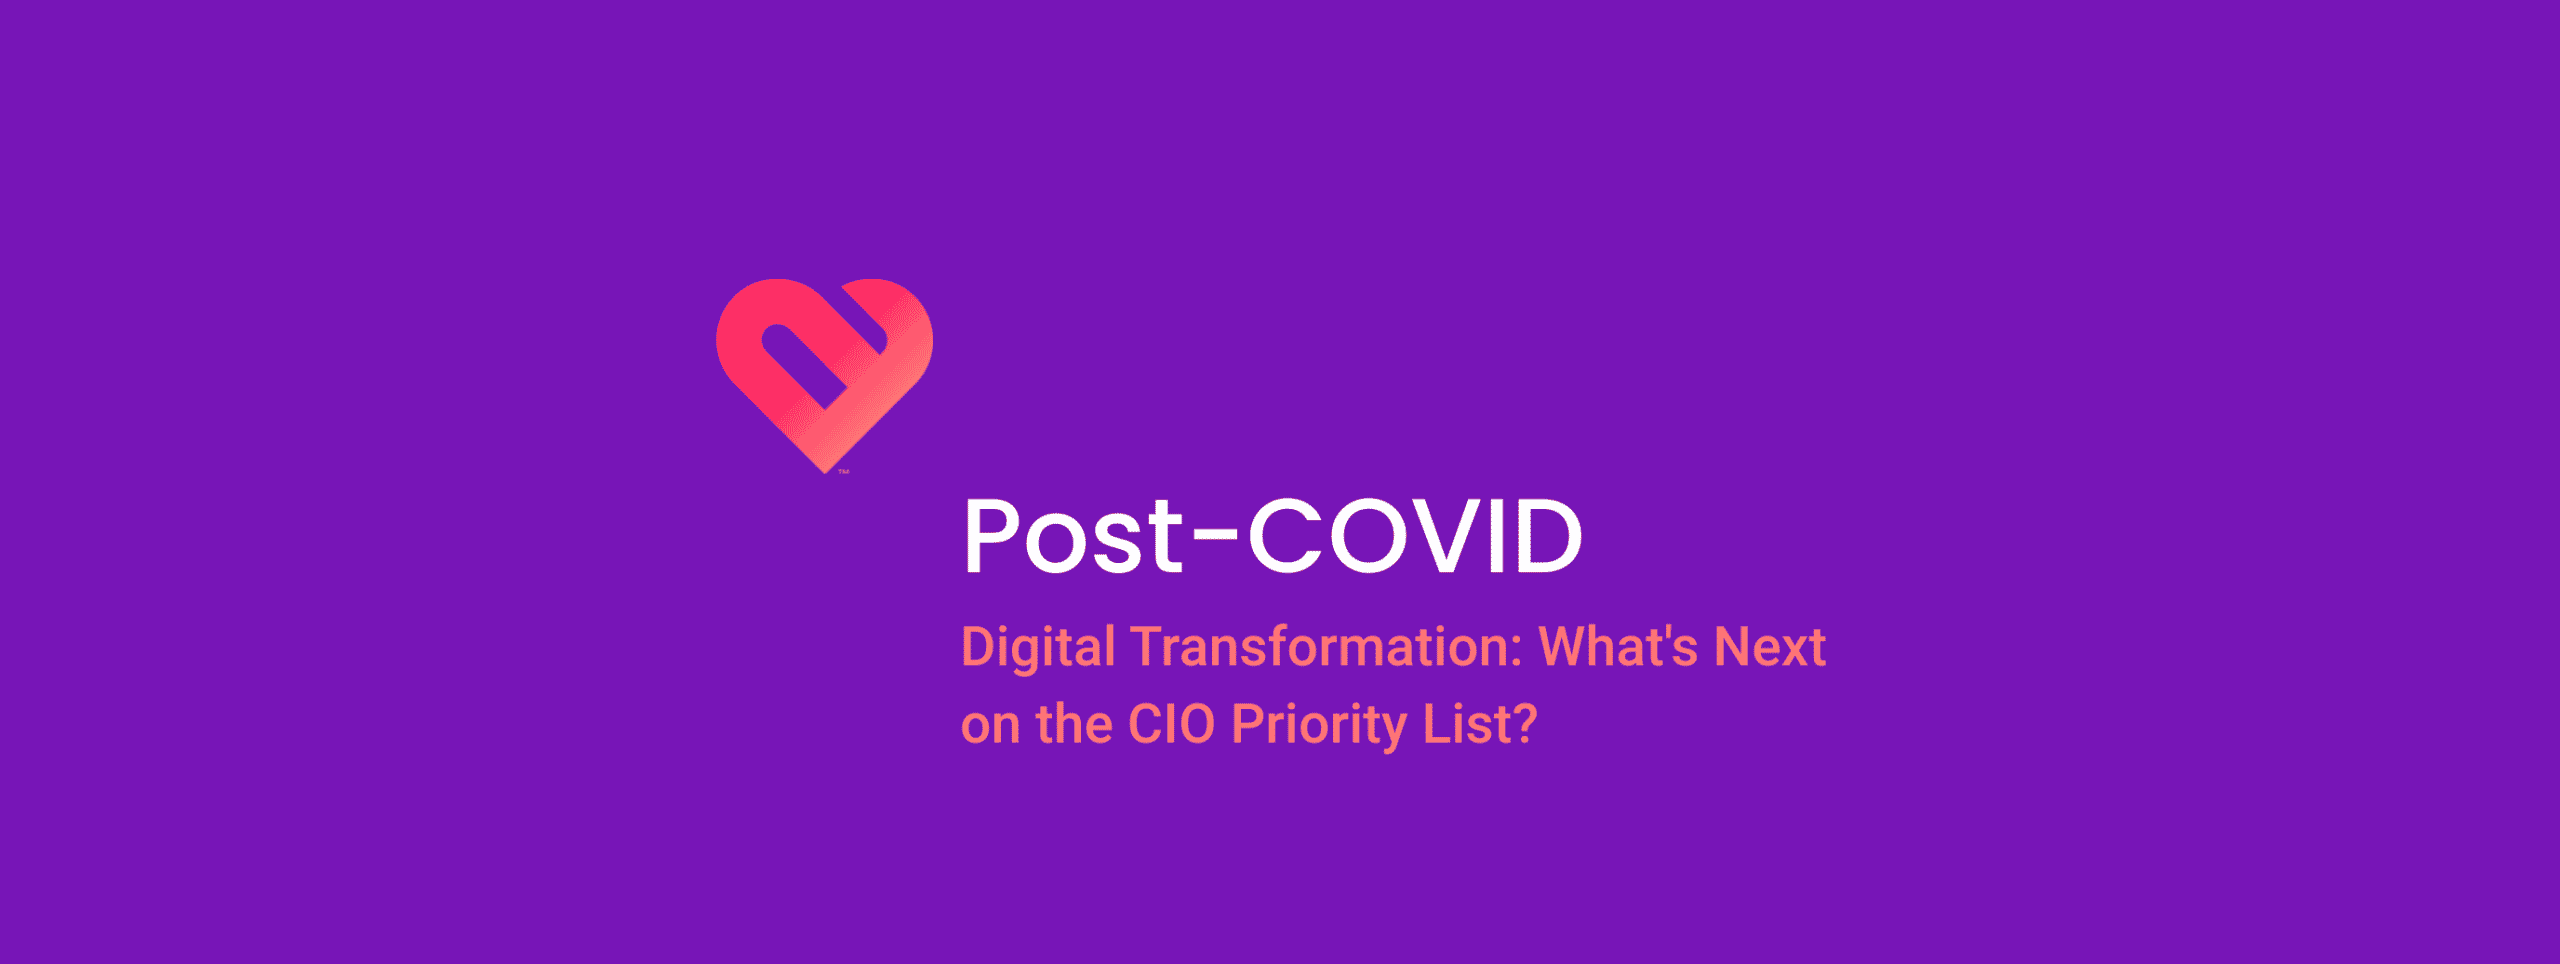 Digital transformation post-COVID header